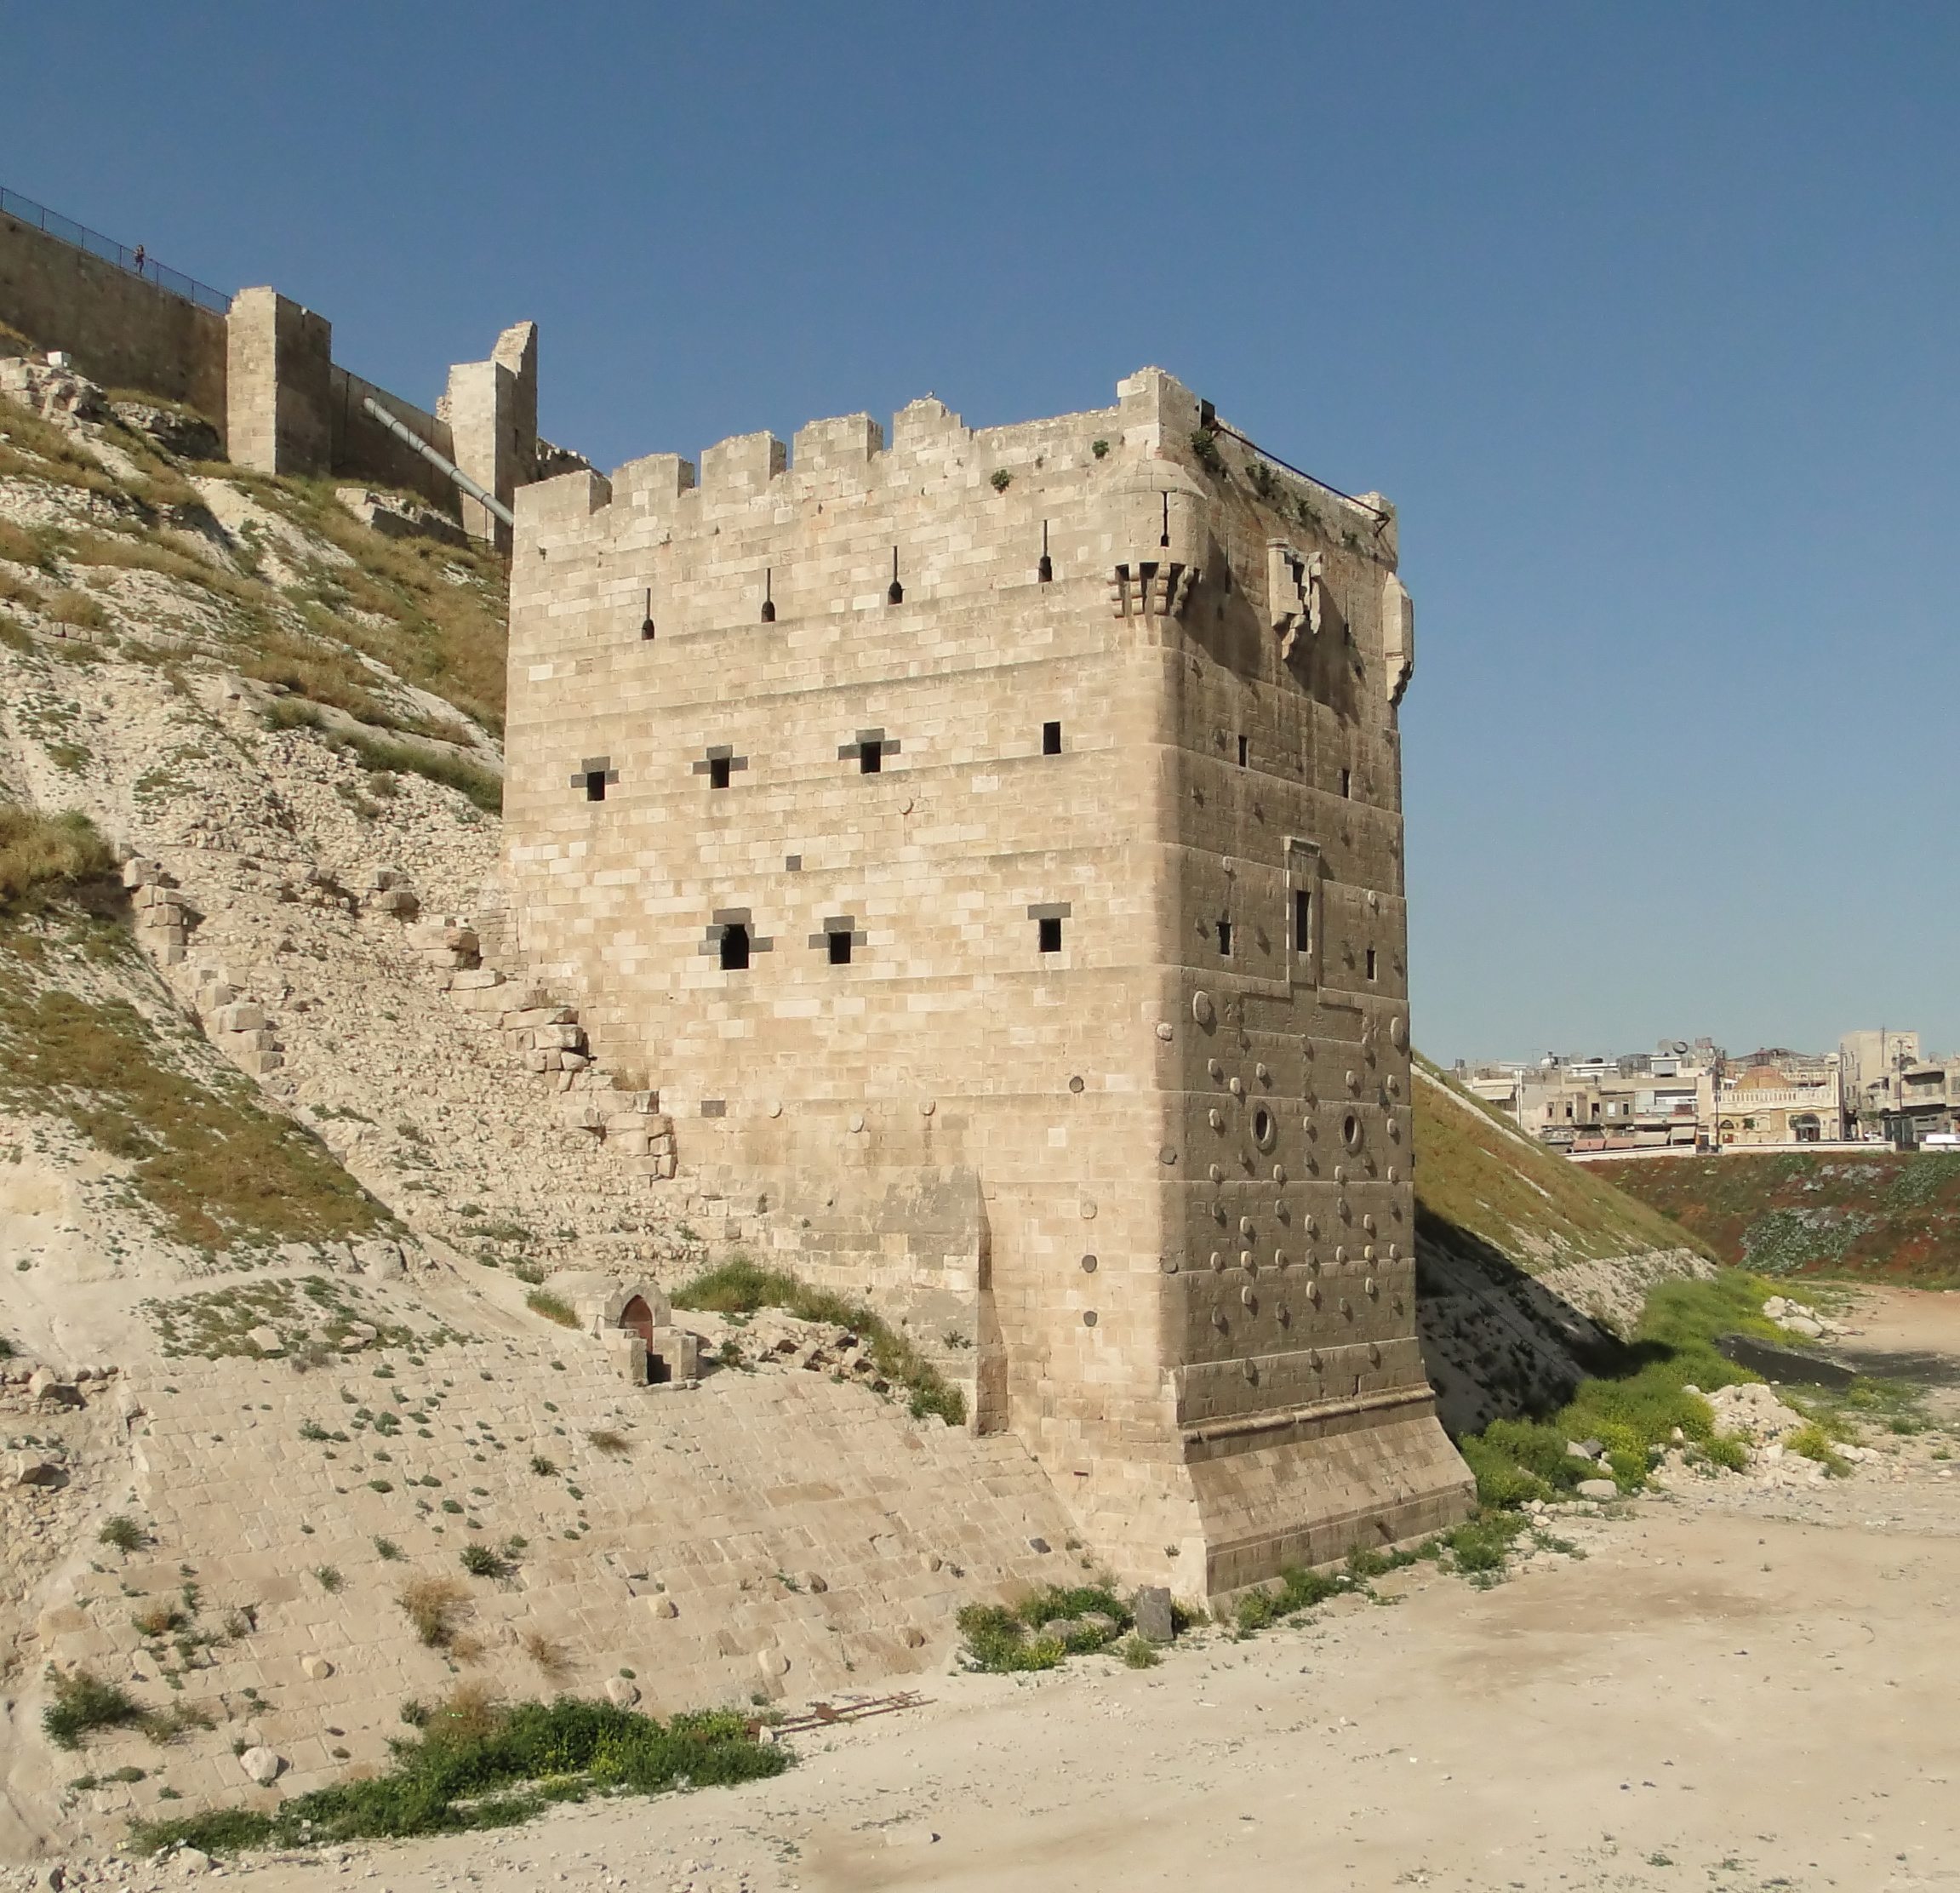 Aleppo Citadel 27 - Right Tower